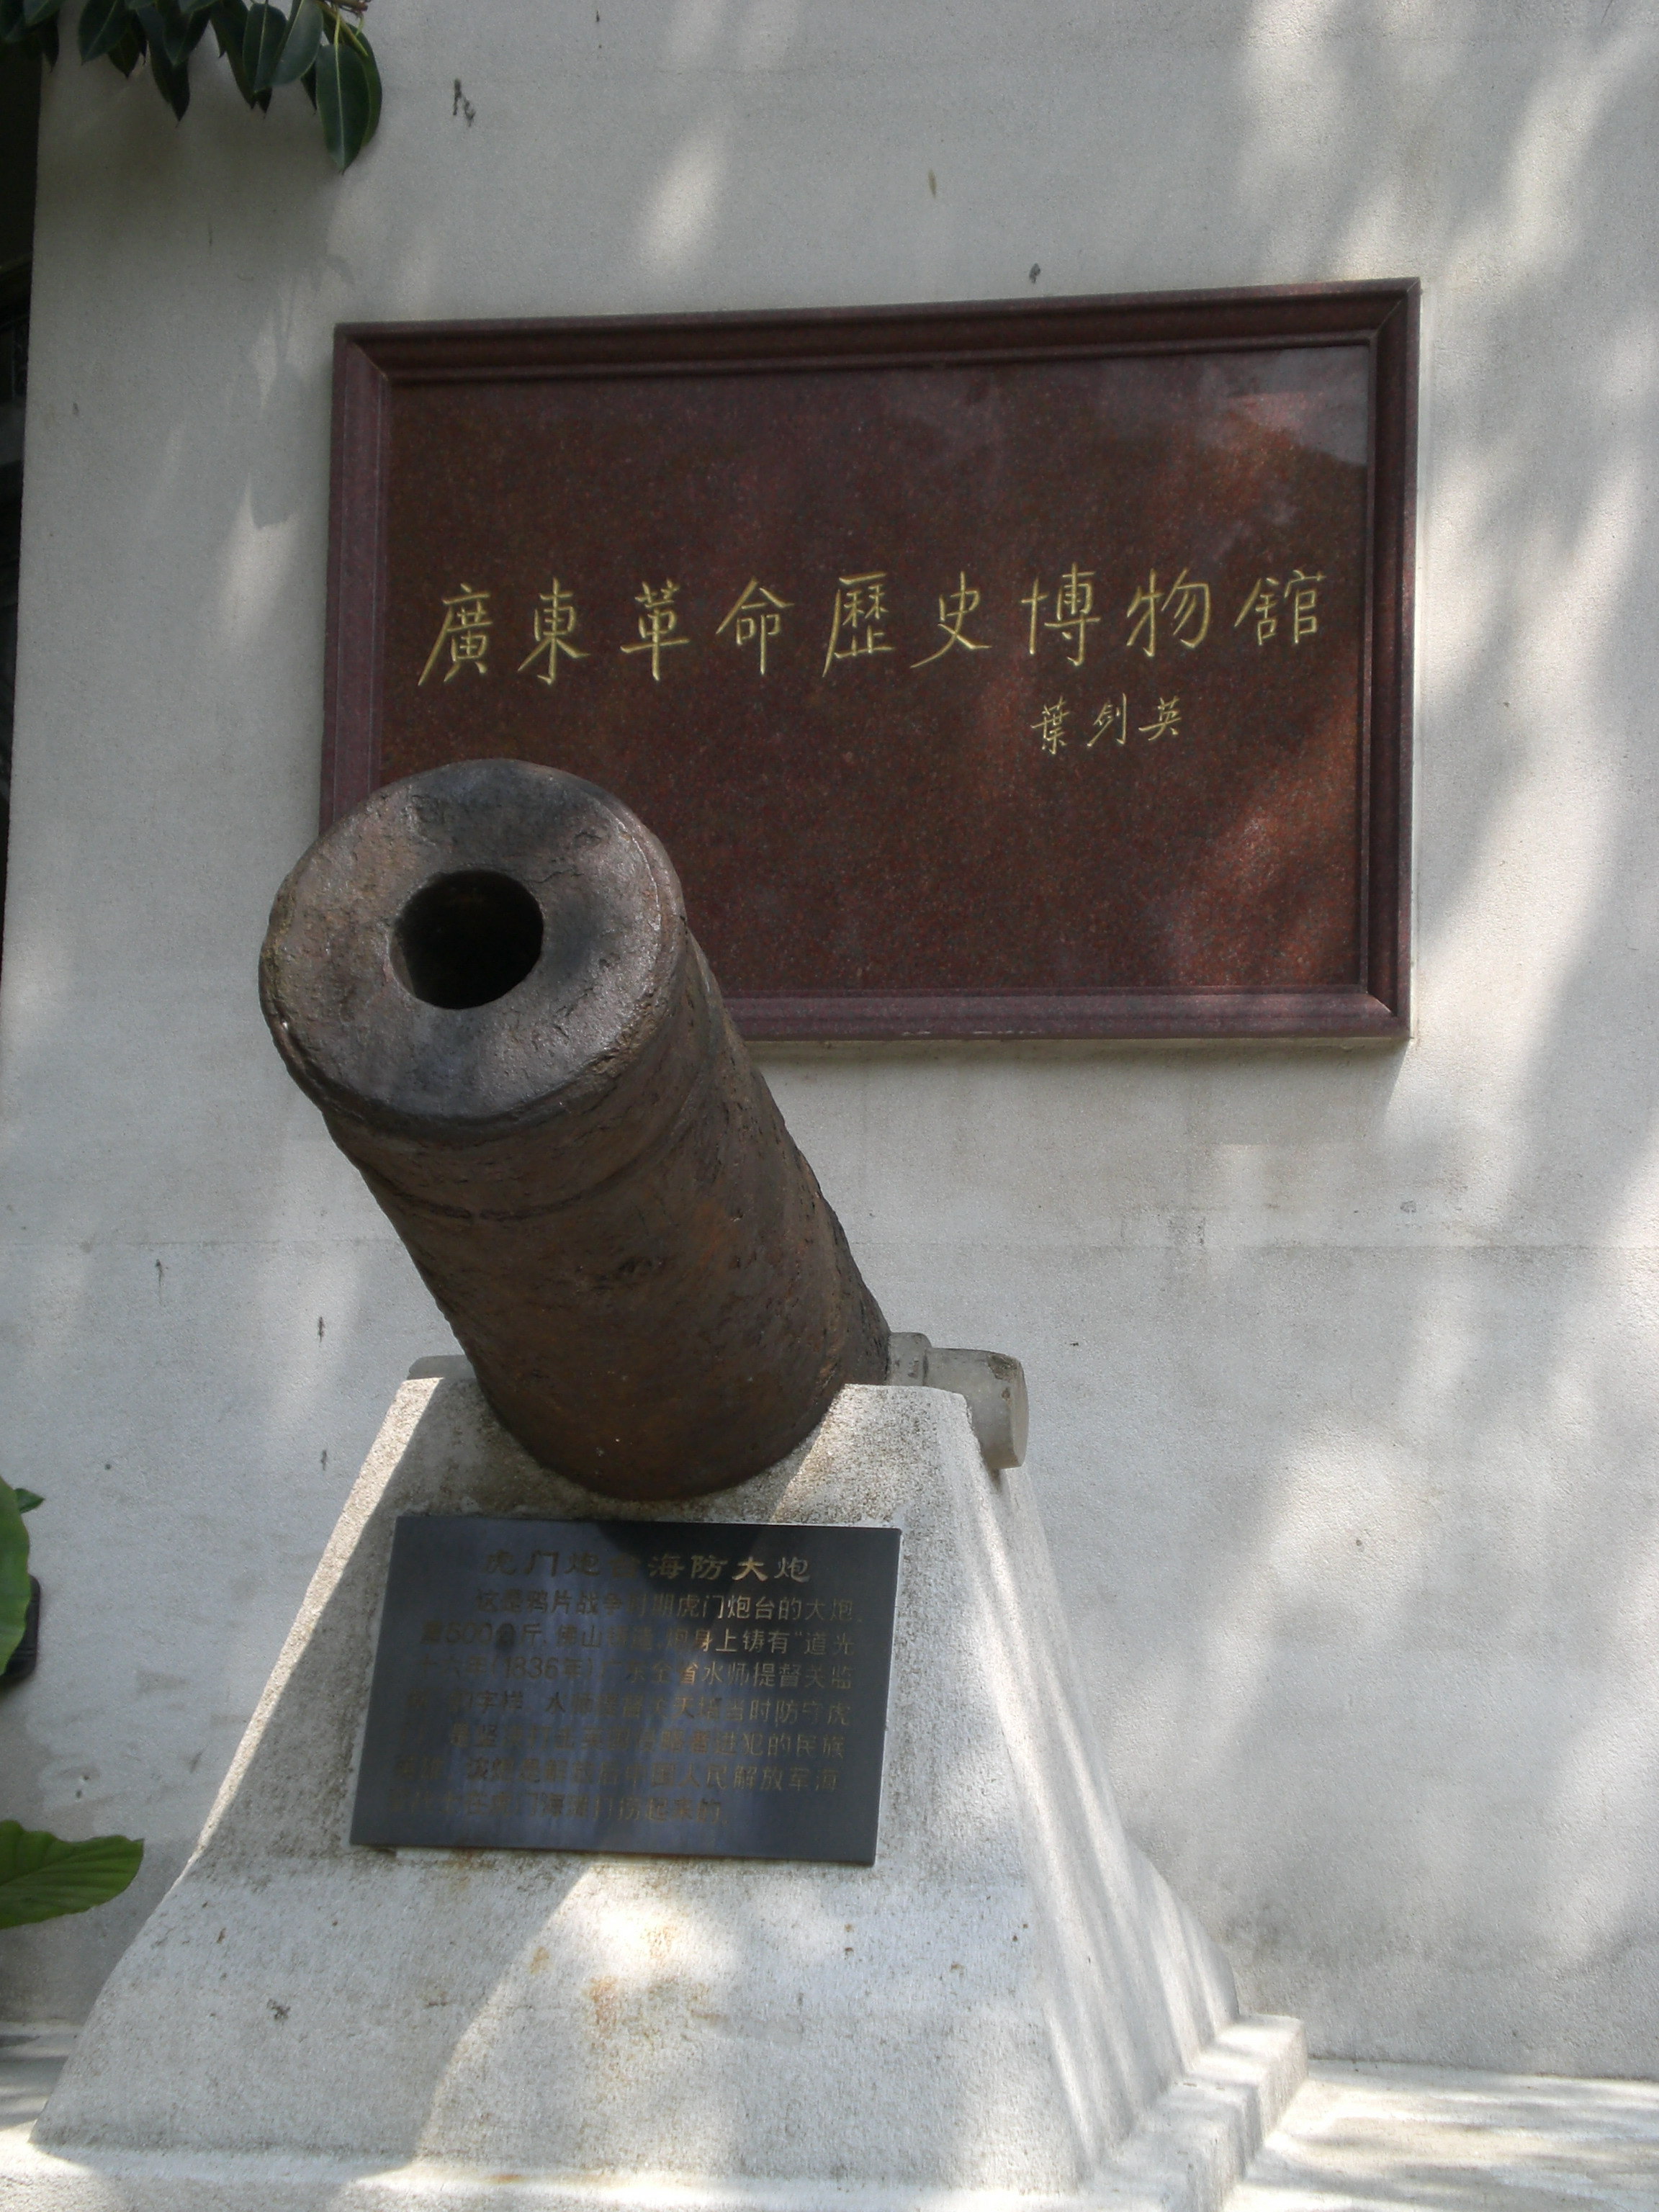              广东革命历史博物馆